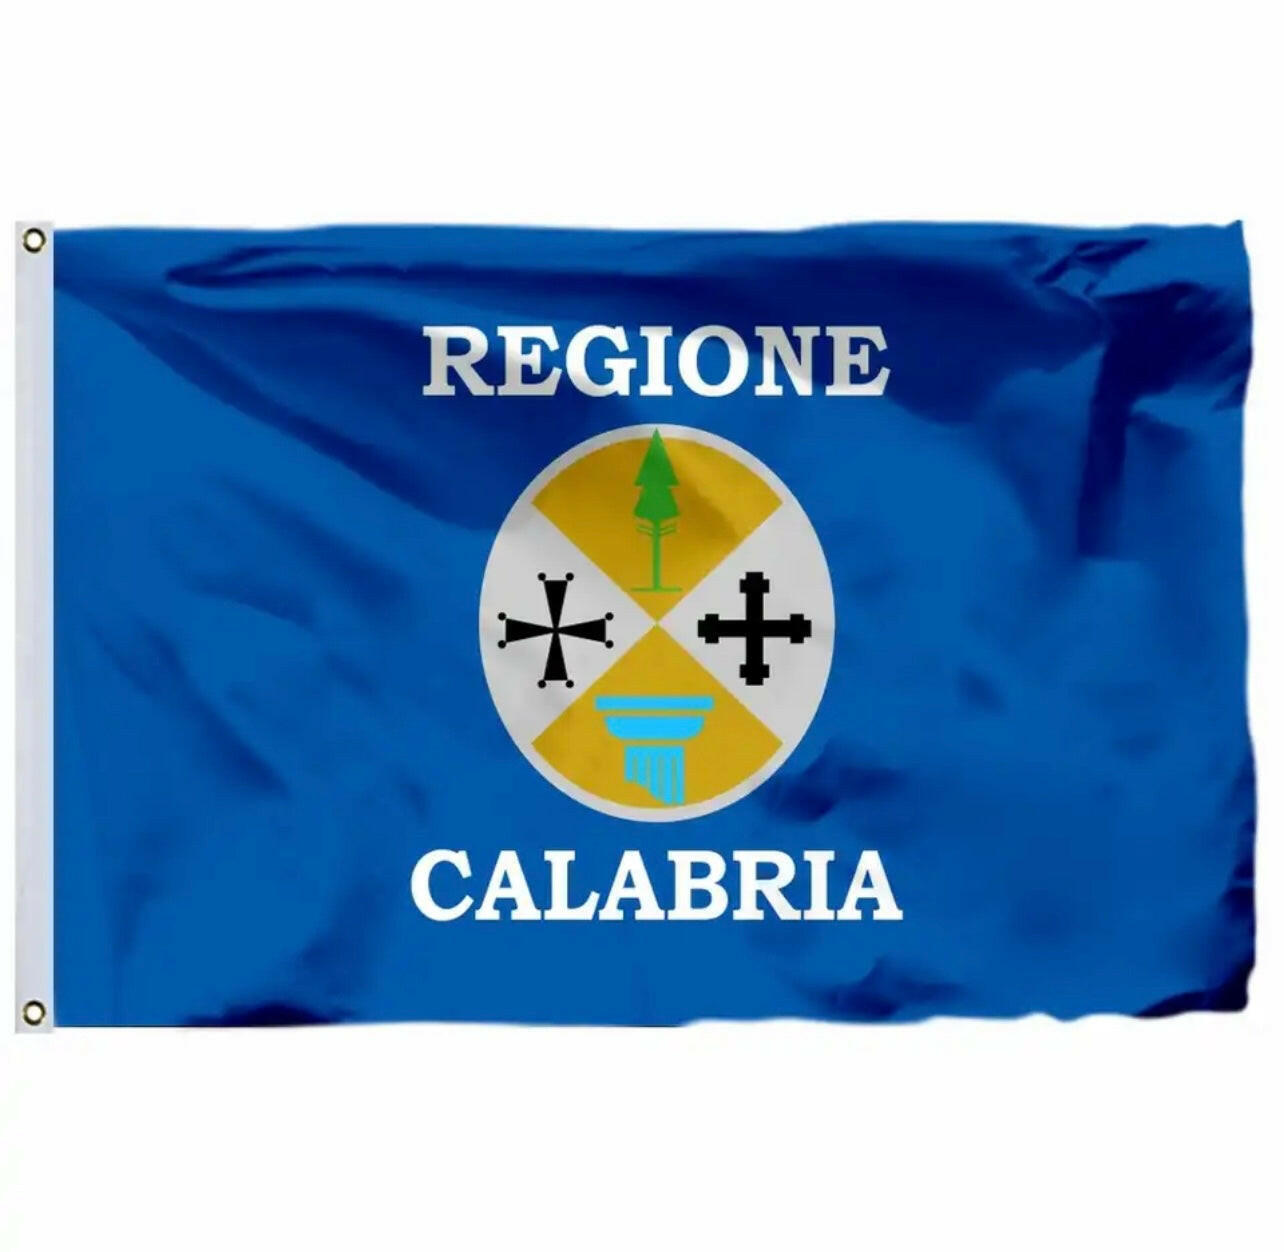 Calabria Flag.